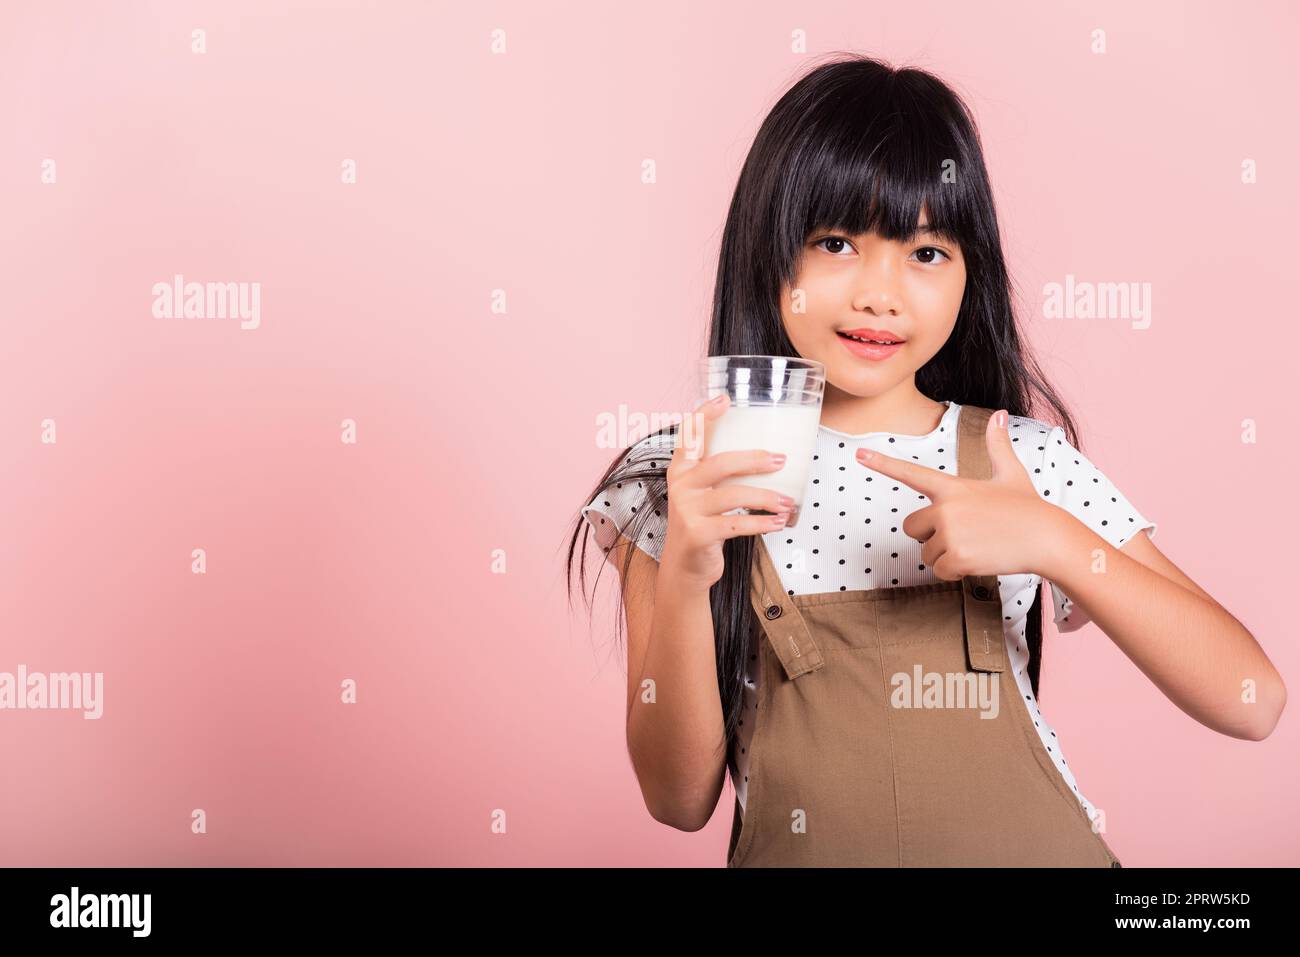 Petit enfant asiatique 10 ans sourire tenir le verre de lait boire du lait blanc et le doigt pointant Banque D'Images